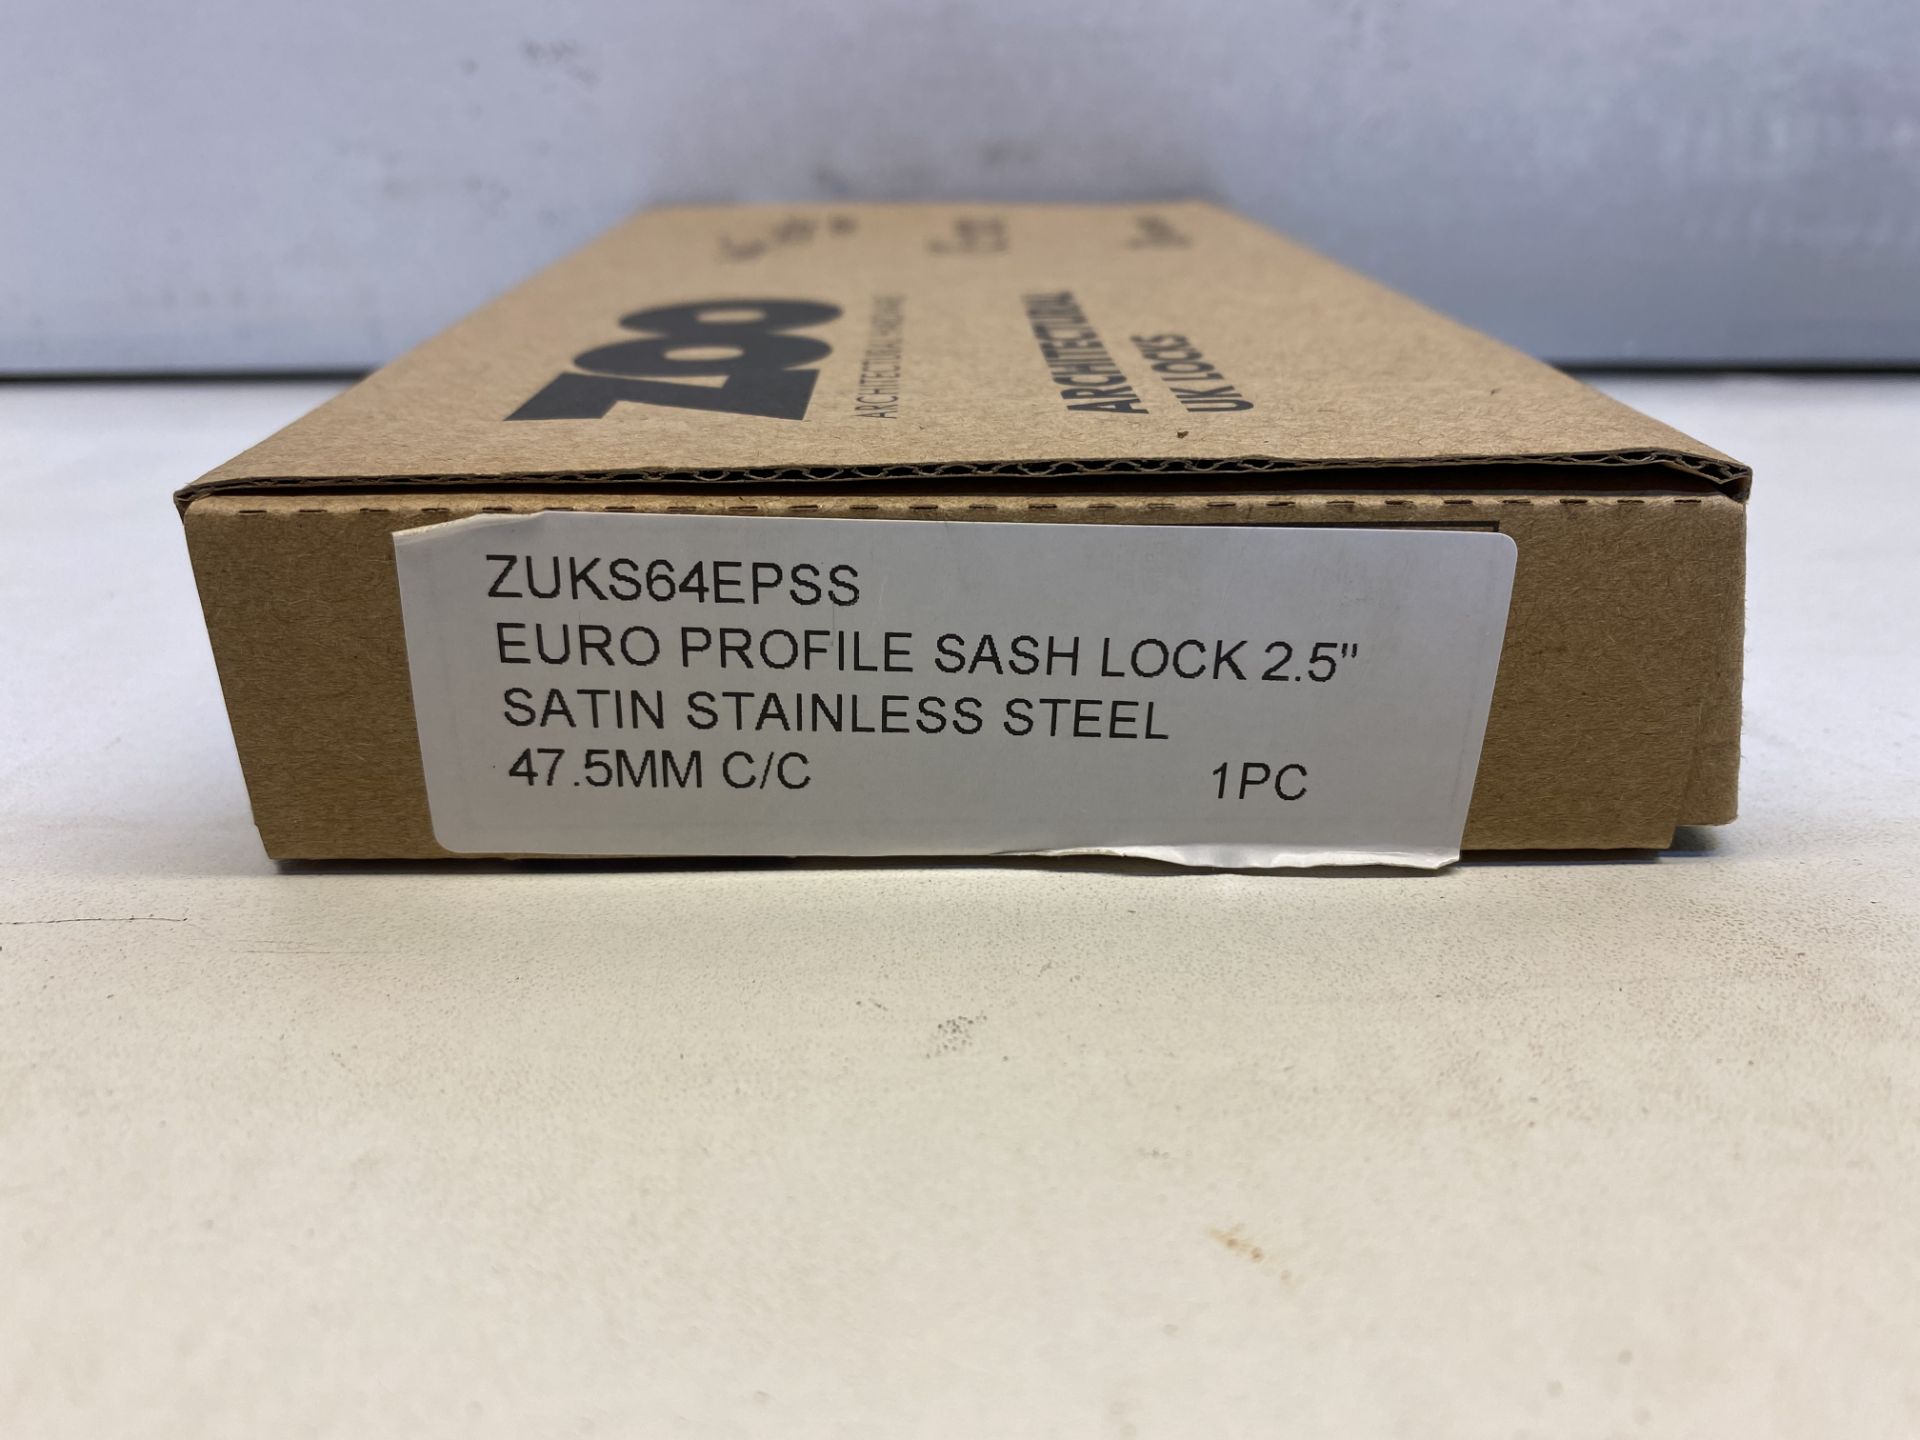 15 x Zoo Hardware Sash Locks | ZUKS64EPSS | Total RRP £162 - Image 3 of 4